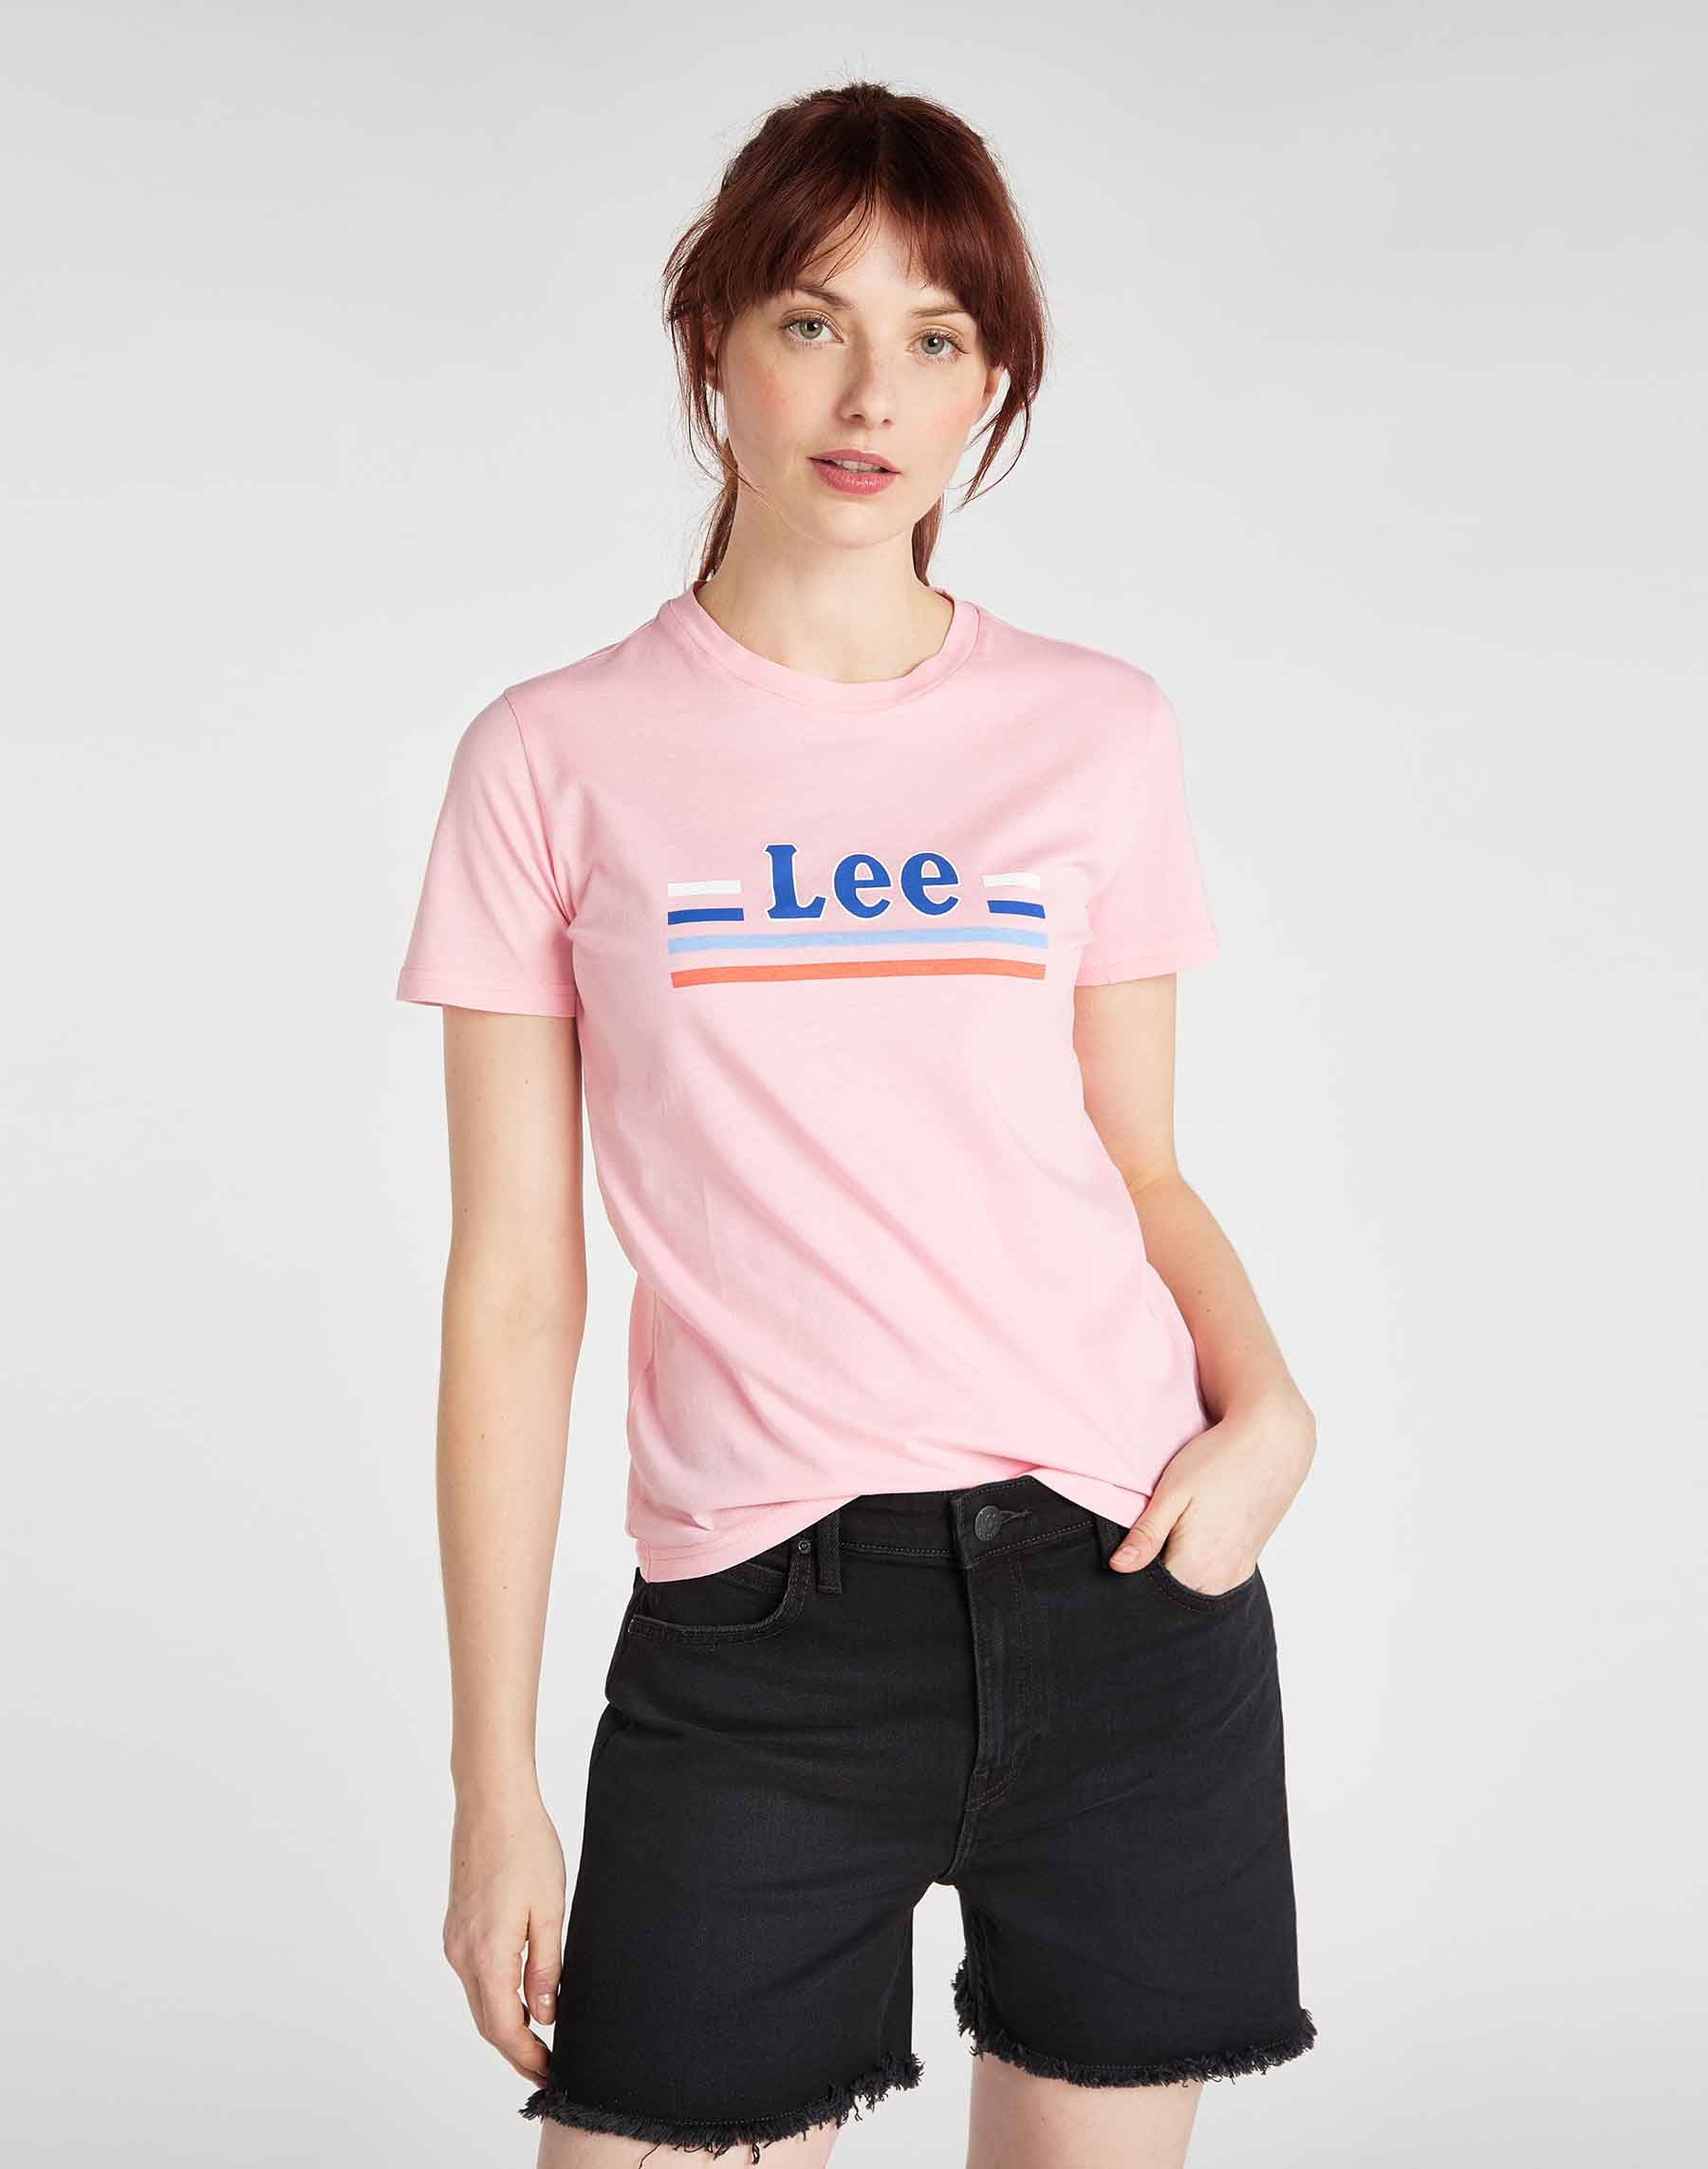 Lee samarreta de dona m/c L41HEPNL color rosa i logo